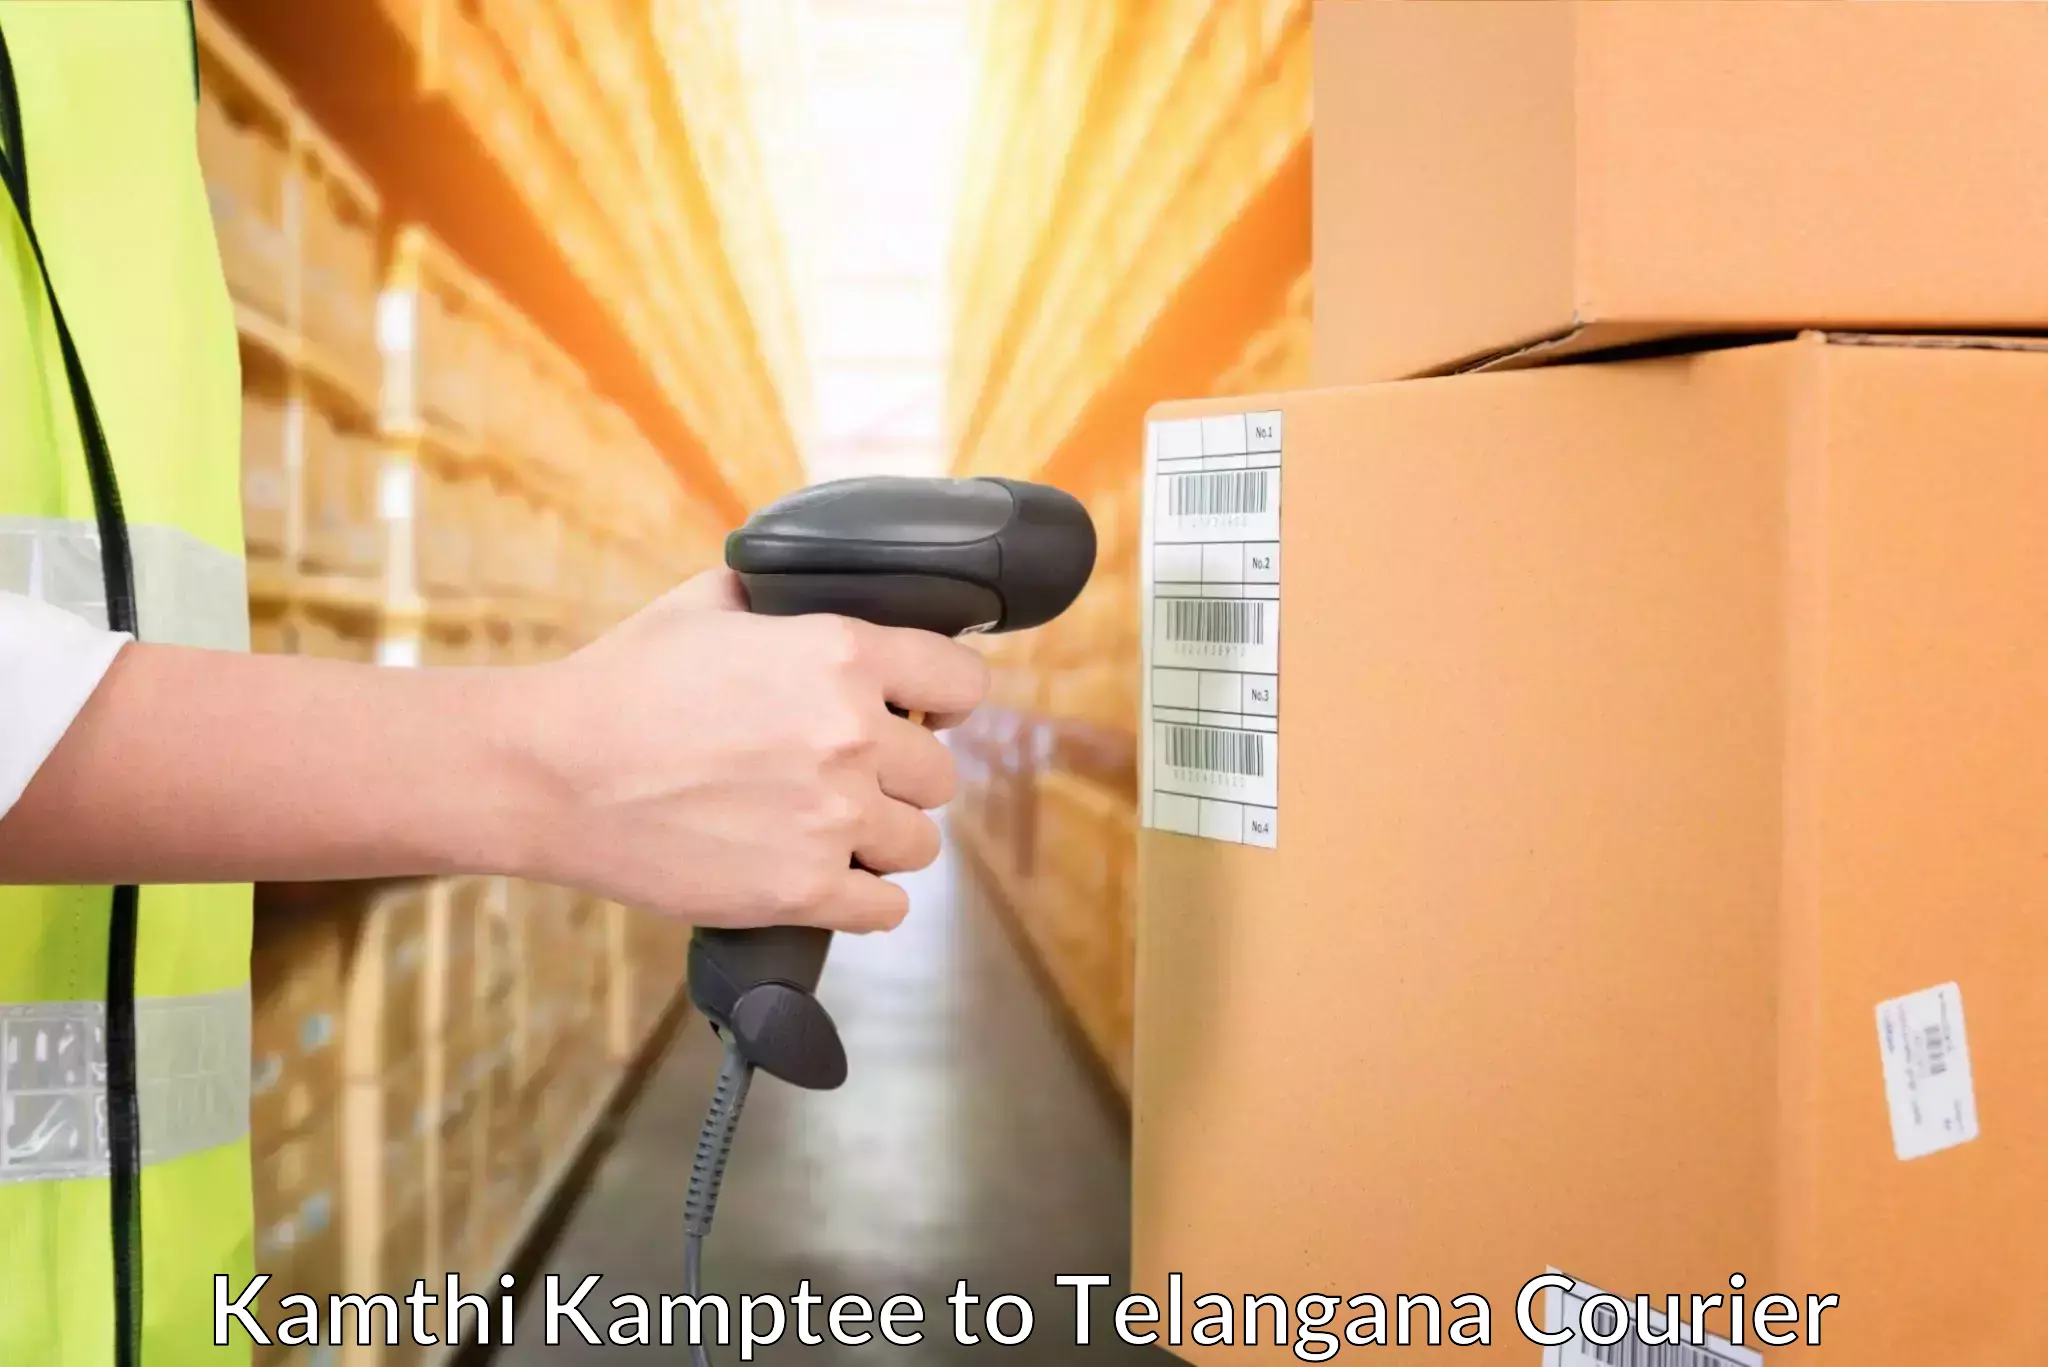 Multi-national courier services Kamthi Kamptee to Aswaraopeta